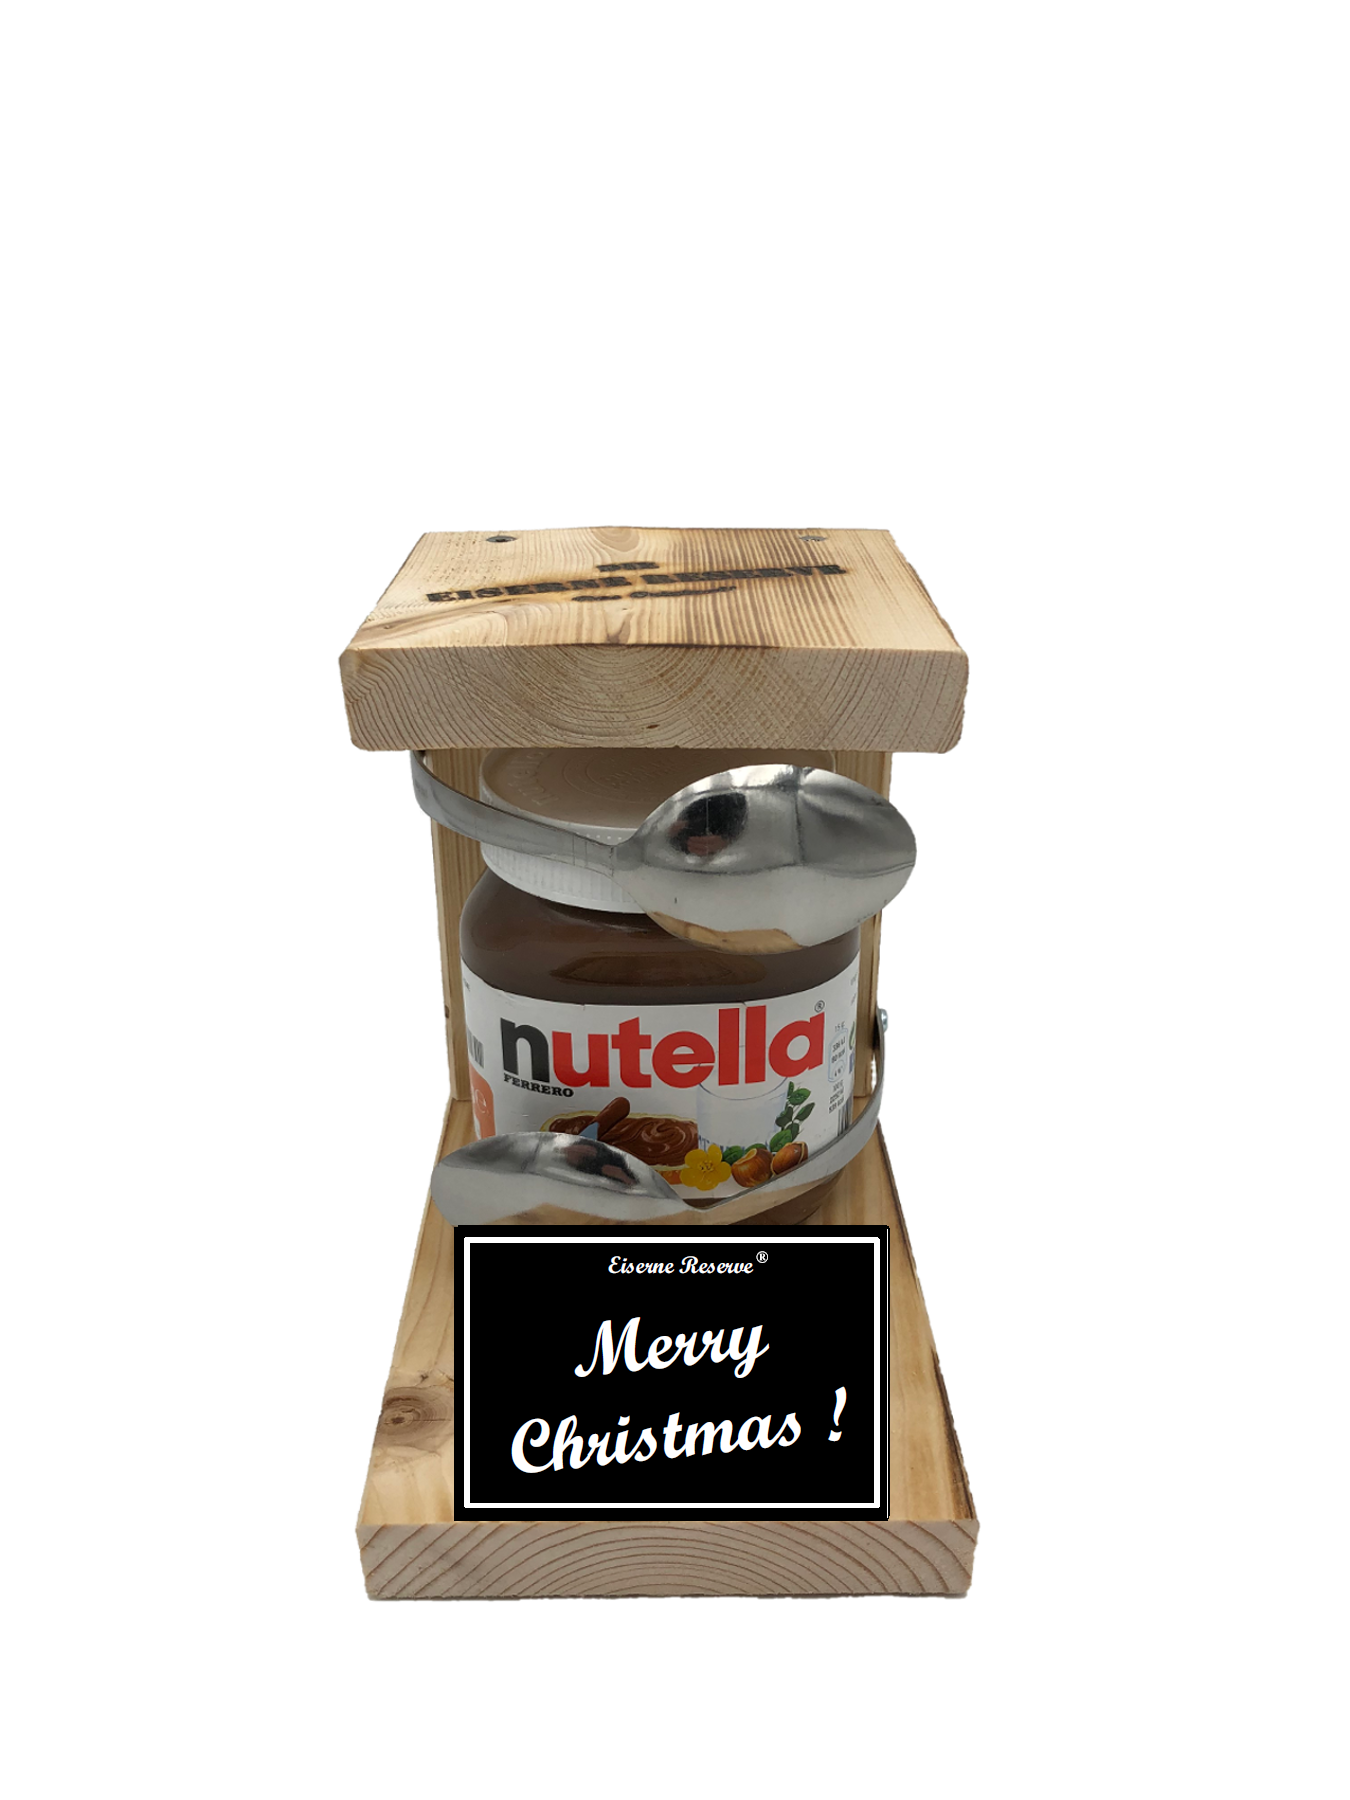 Merry Christmas Löffel Nutella Geschenk - Die Nutella Geschenkidee